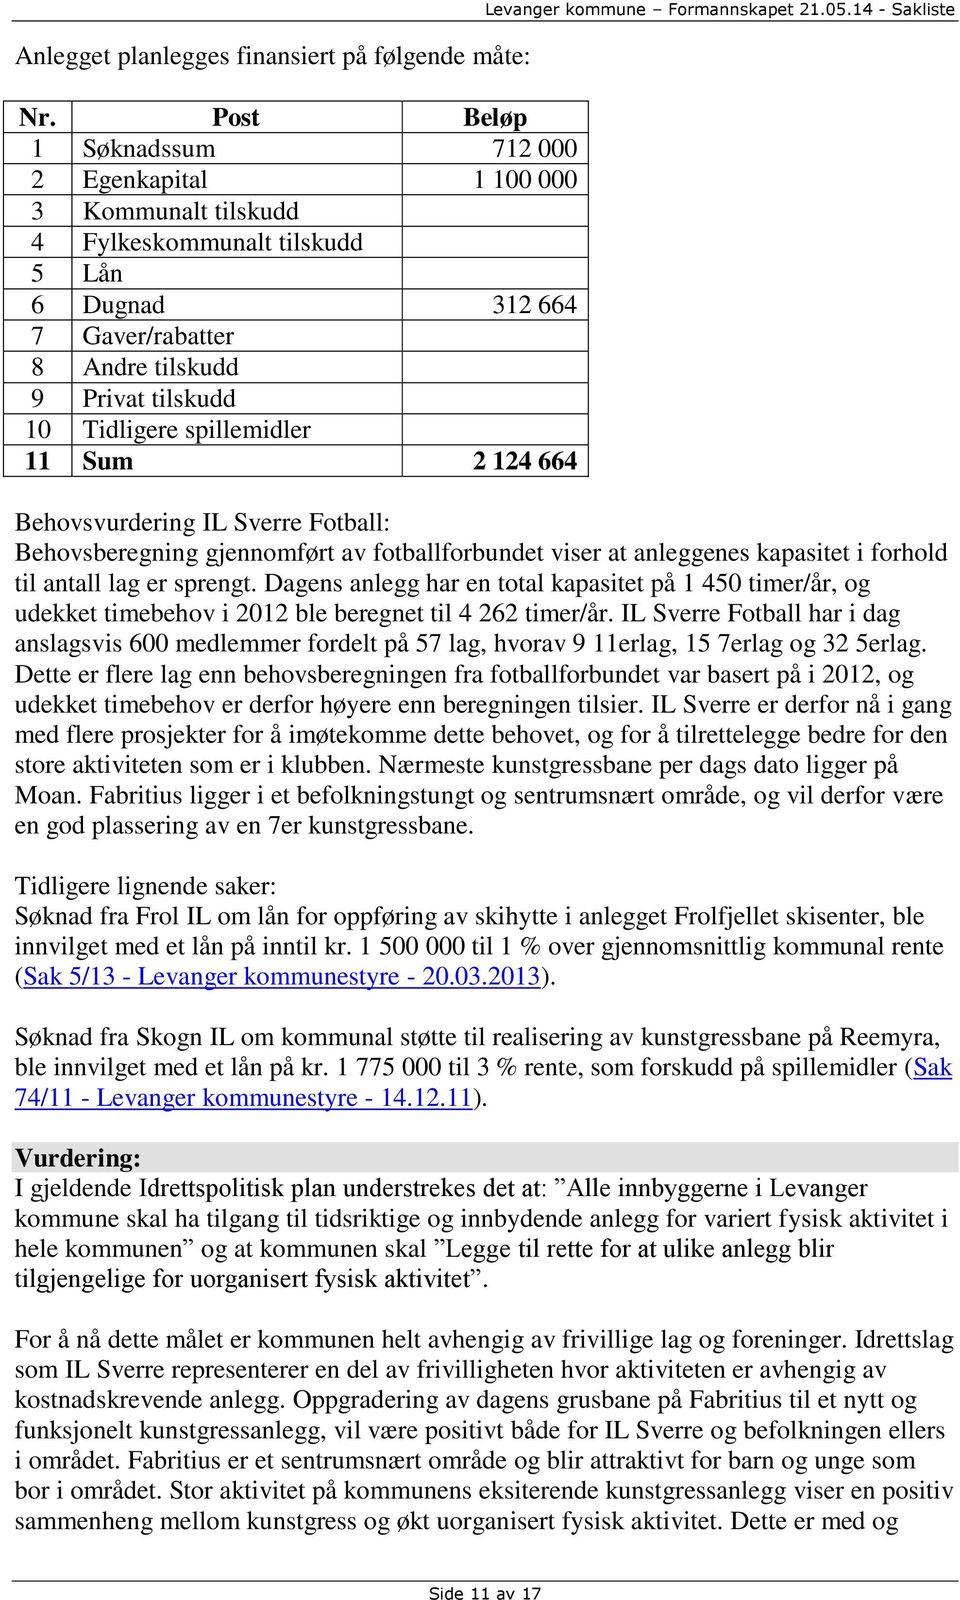 spillemidler 11 Sum 2 124 664 Levanger kommune Formannskapet 21.05.